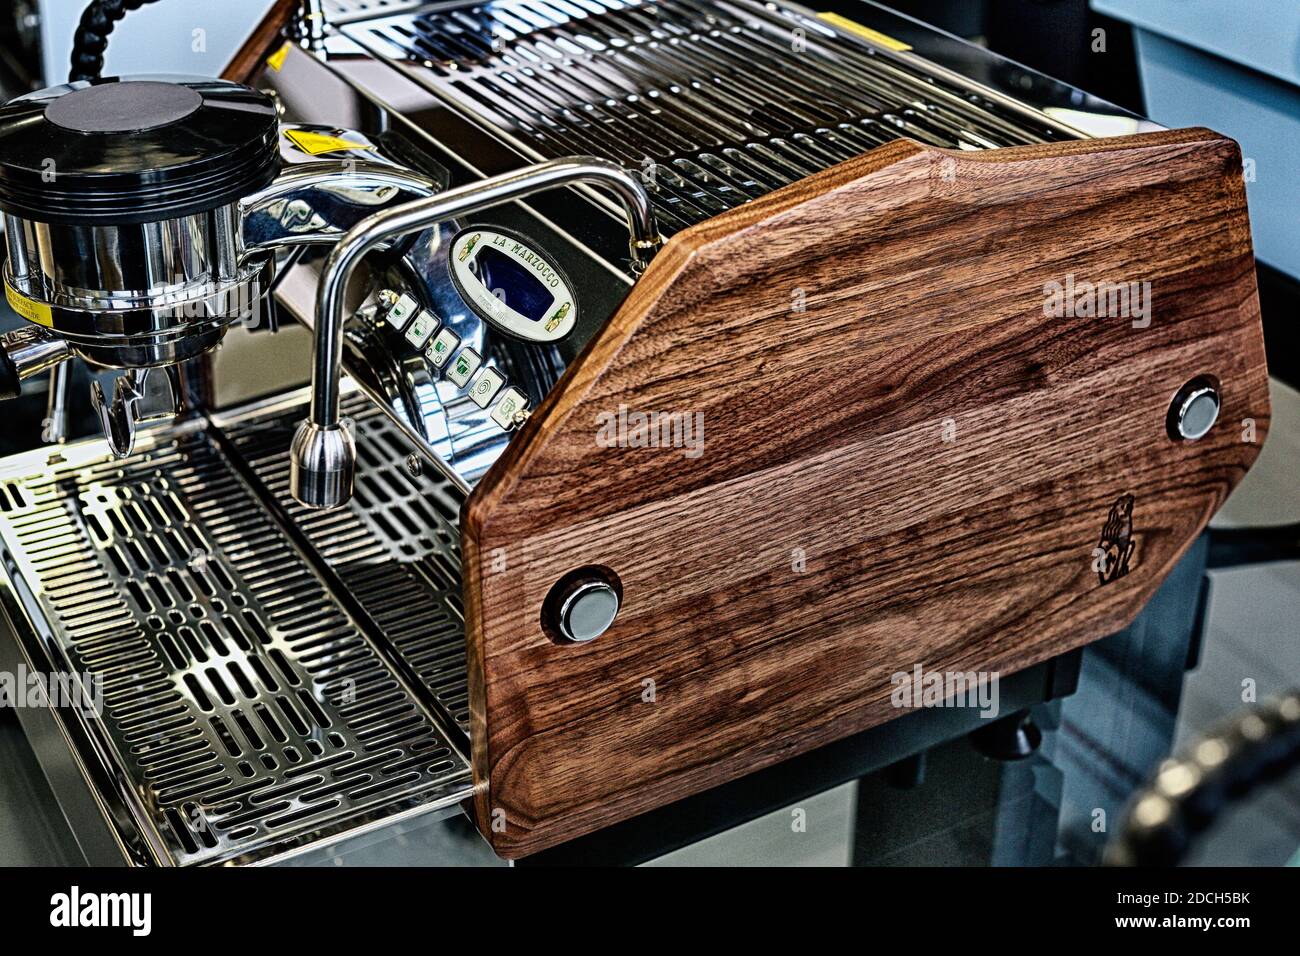 Macchine da caffè la Marzocco personalizzate a mano per i clienti.macchine da caffè di alta qualità, superbamente realizzate e progettate in modo unico. Foto Stock